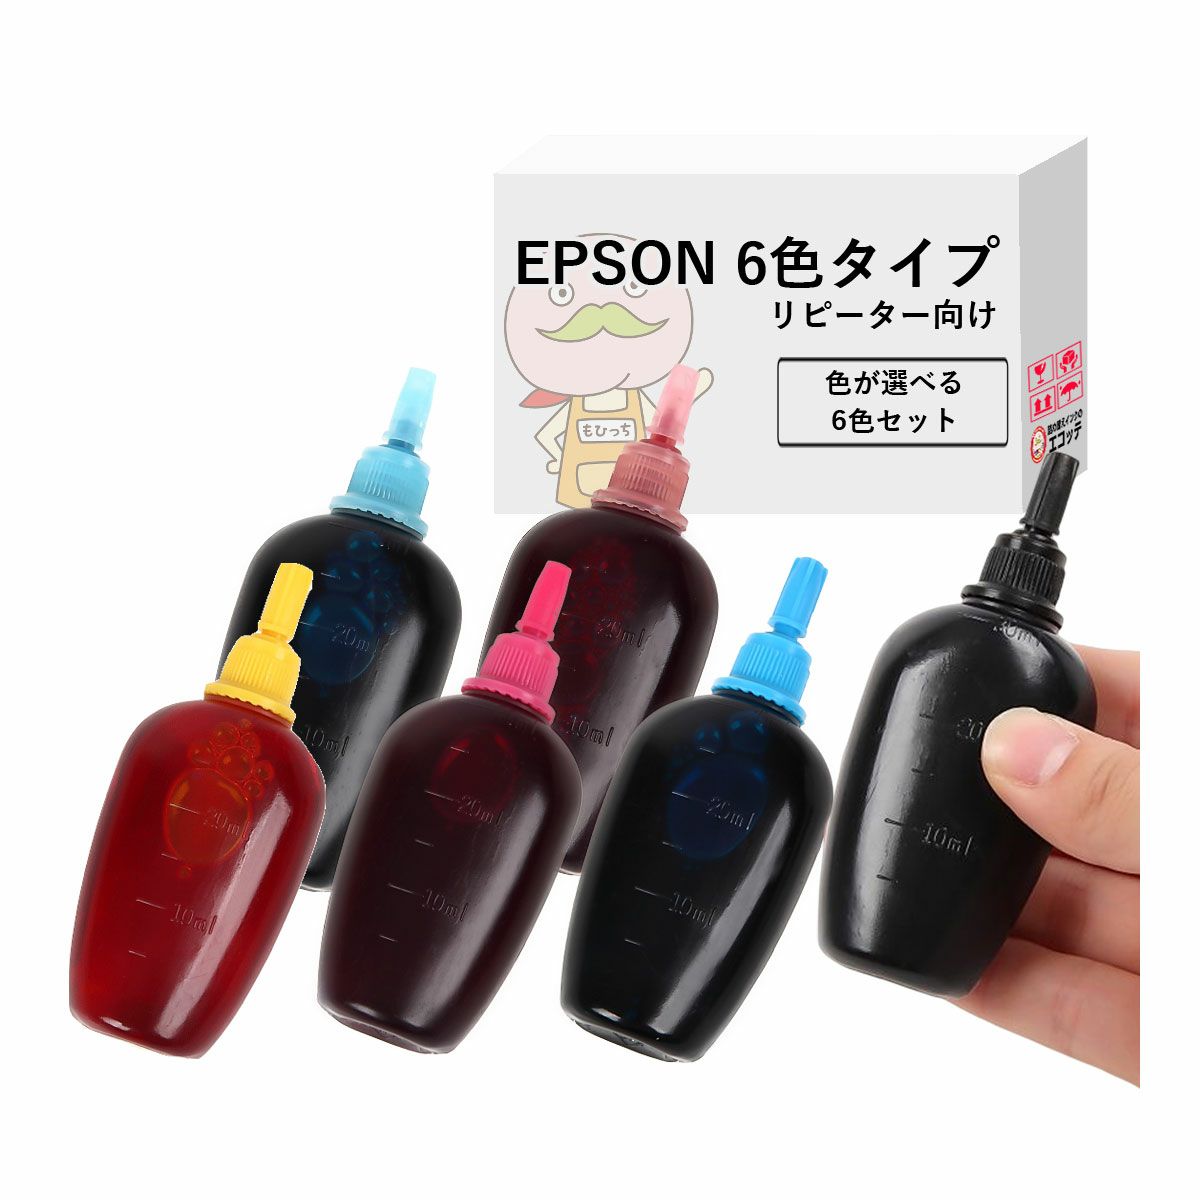 リピーター向け・6色タイプ】 EPSON(エプソン) 純正用詰め替えインク